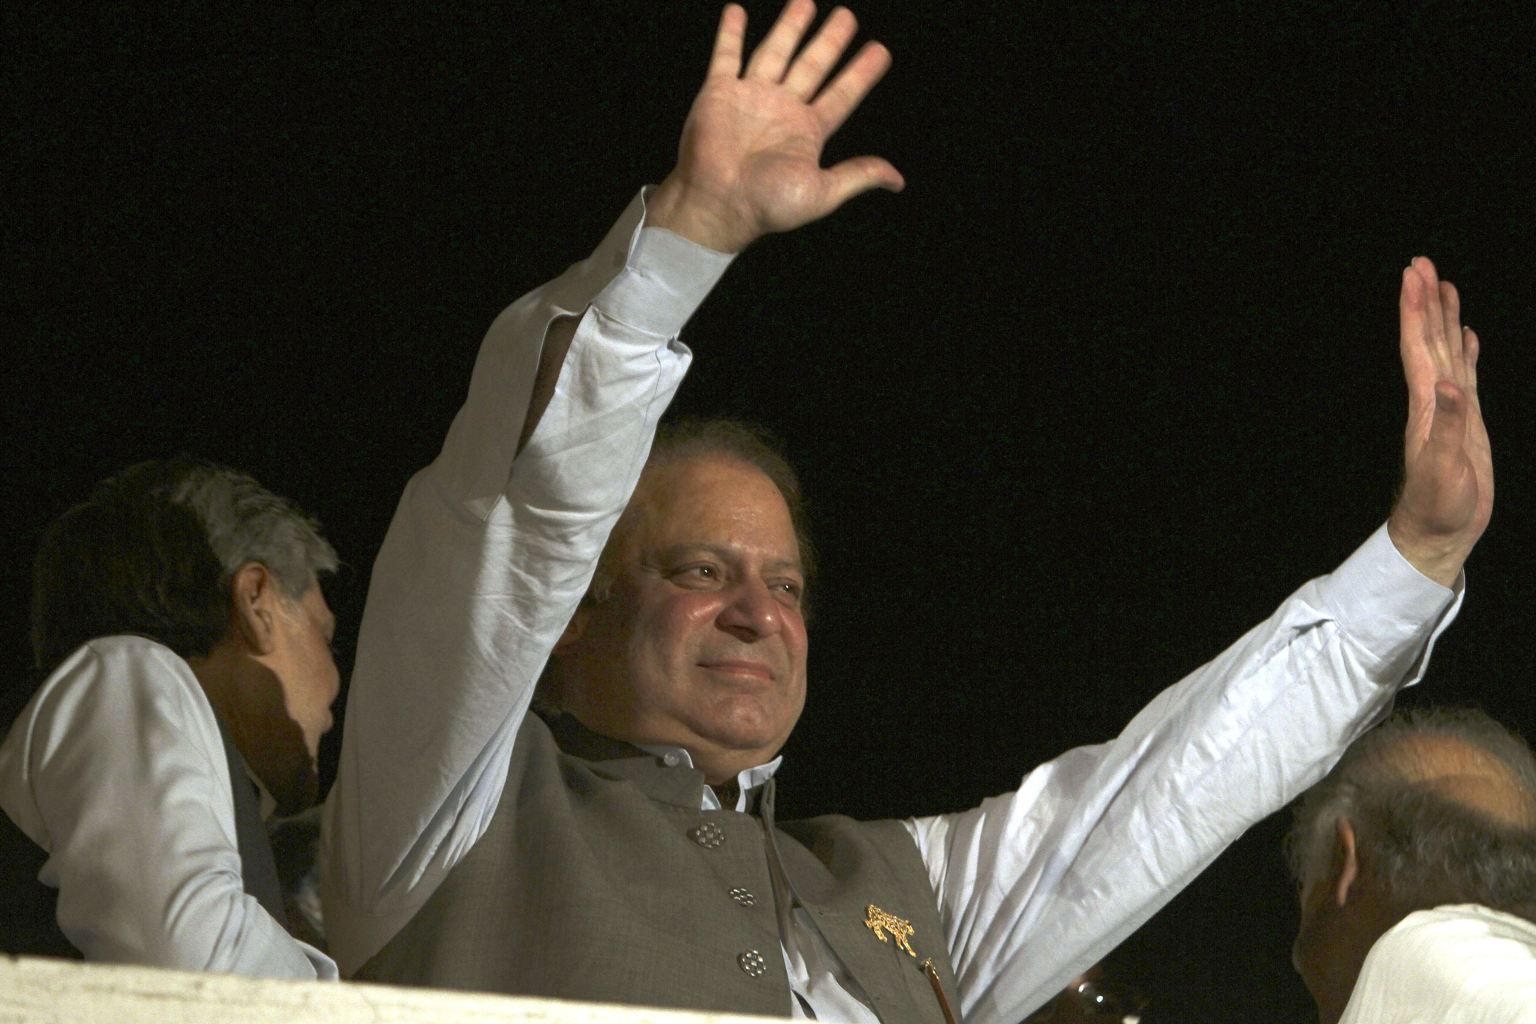 谢里夫宣布赢得巴基斯坦大选 袭击连连难挡选民热情